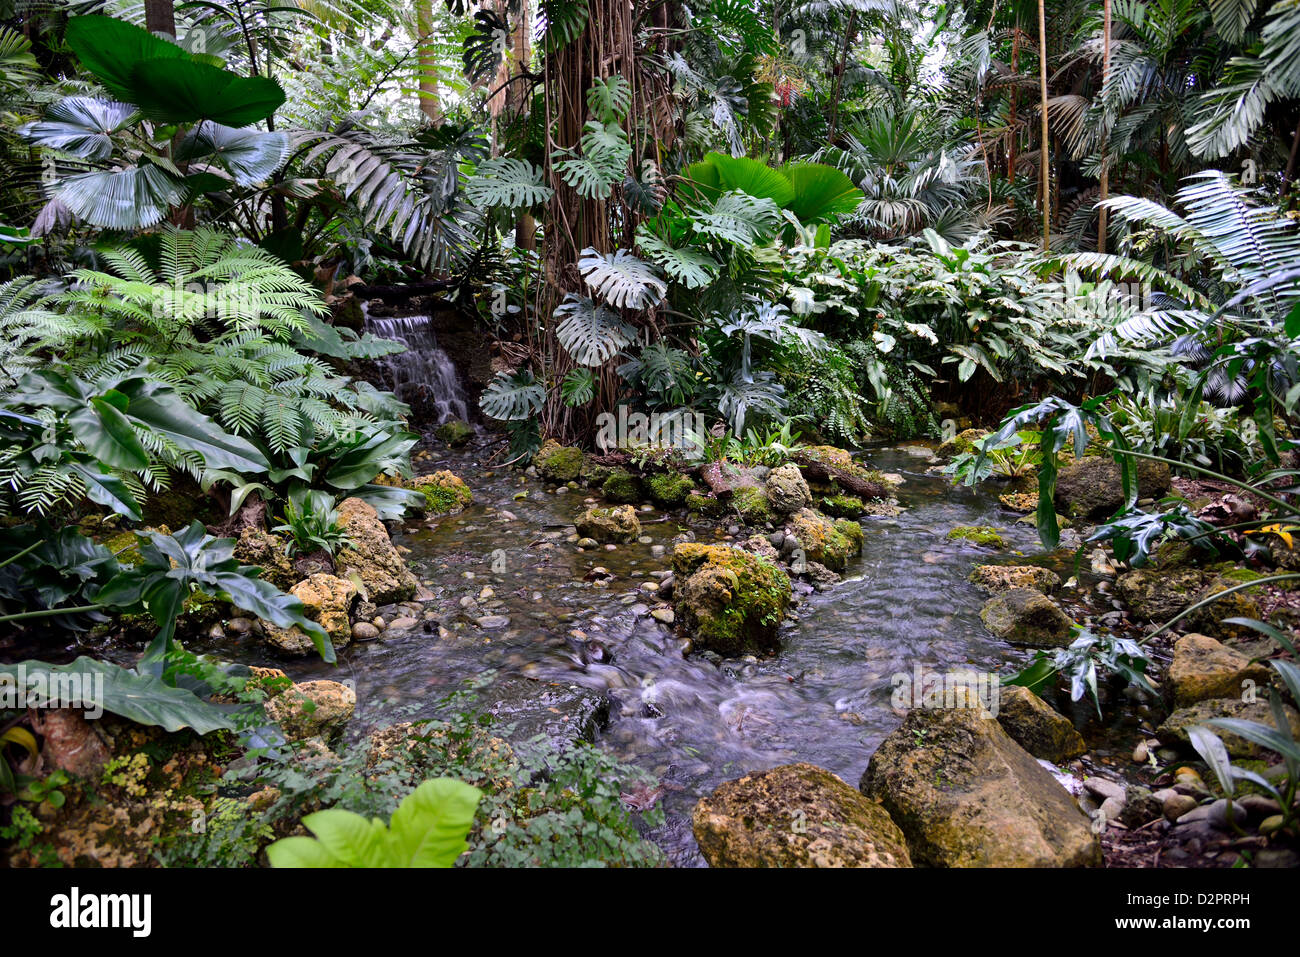 A tropical garden and creek. Fairchild Botanical garden. Coral Gables, Florida, USA. Stock Photo